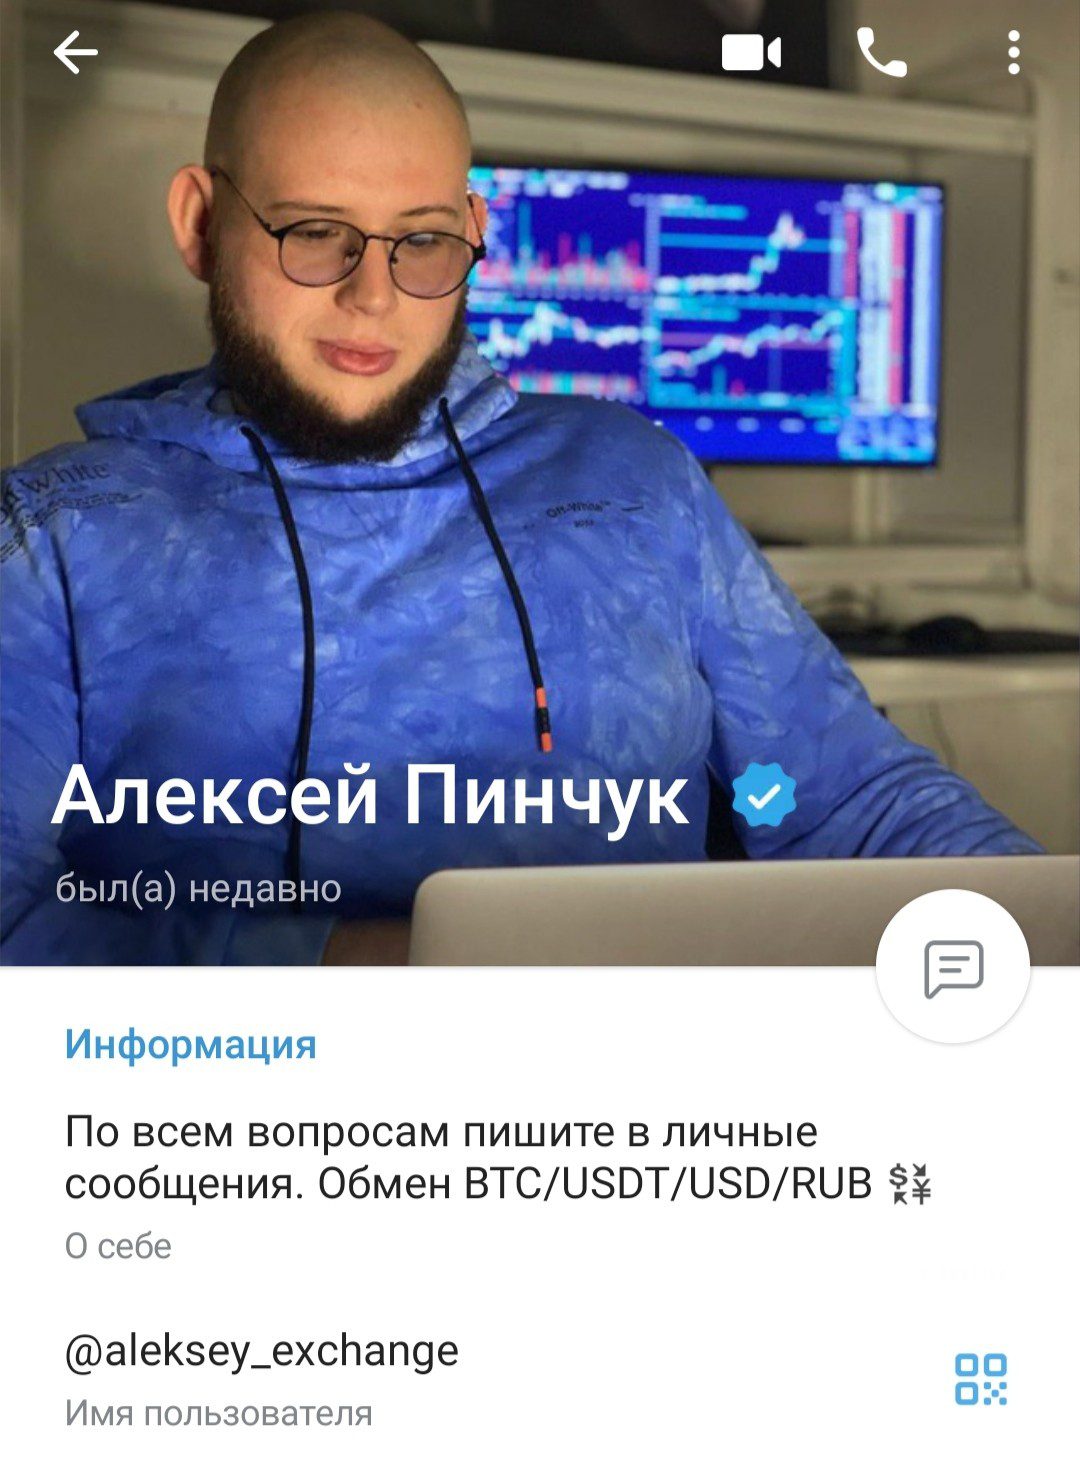 Новый ТГ-канал Максима Столыпина под другим именем